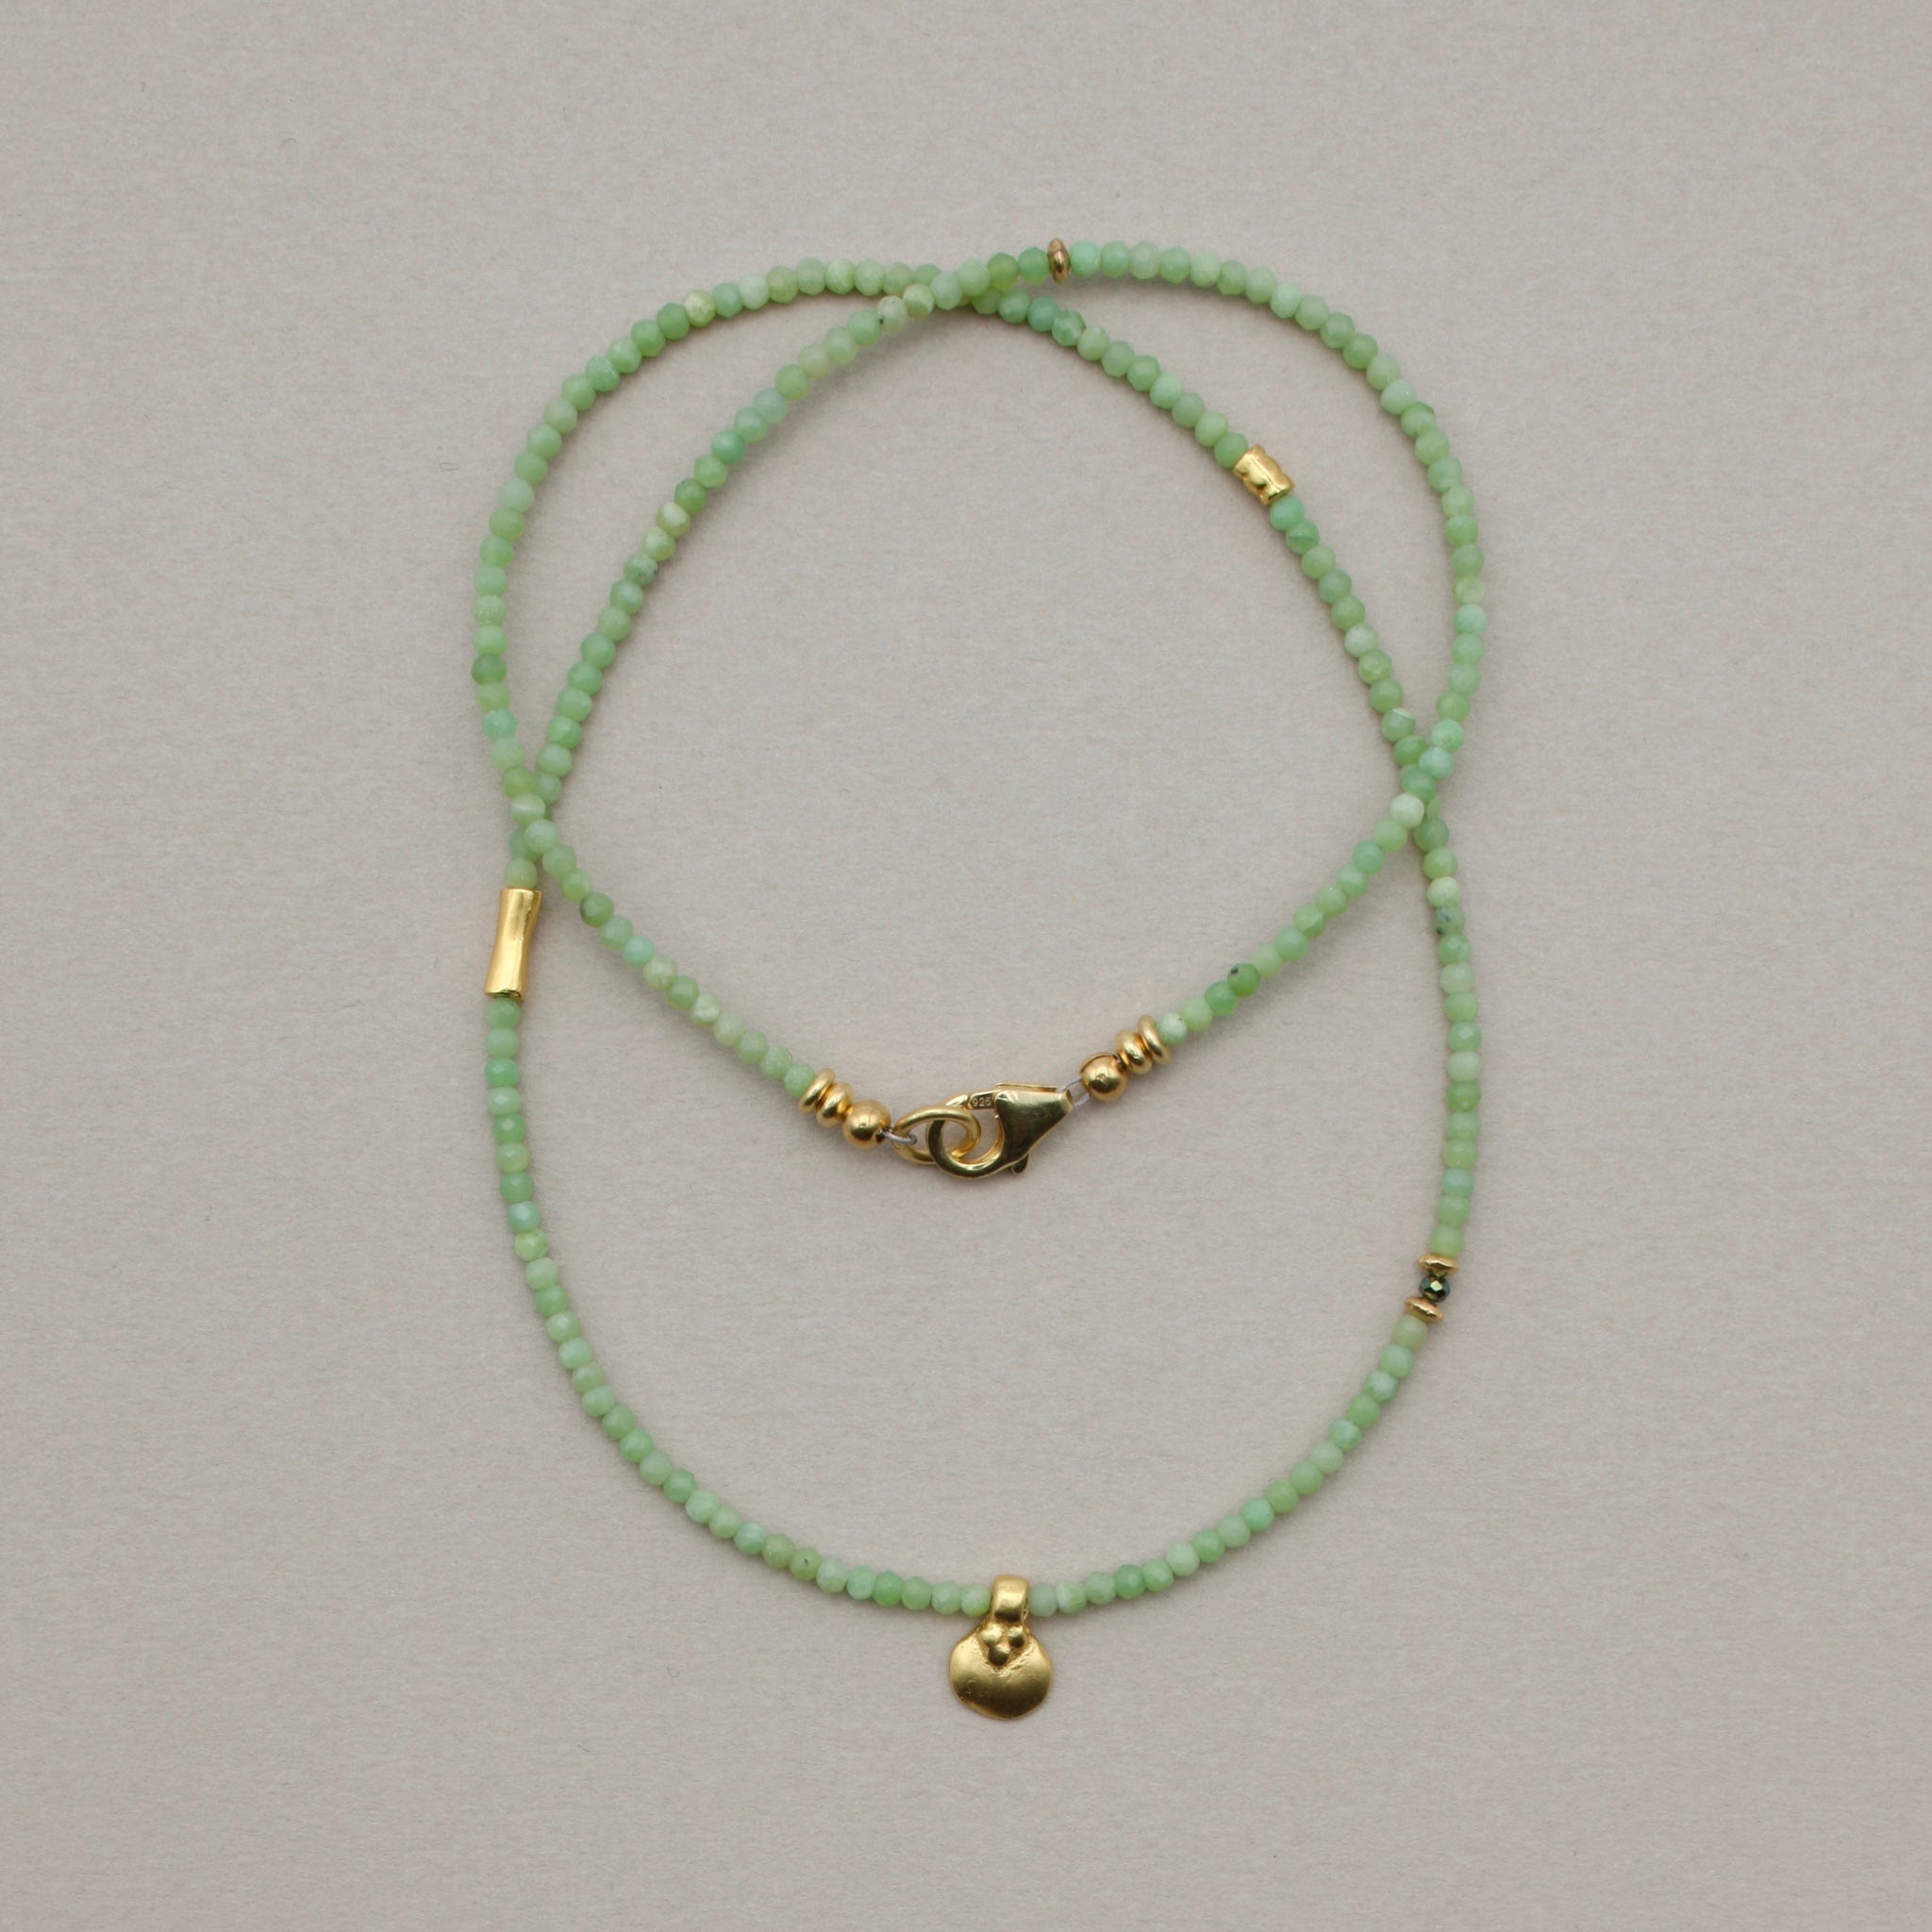 Green Serpentine Necklace